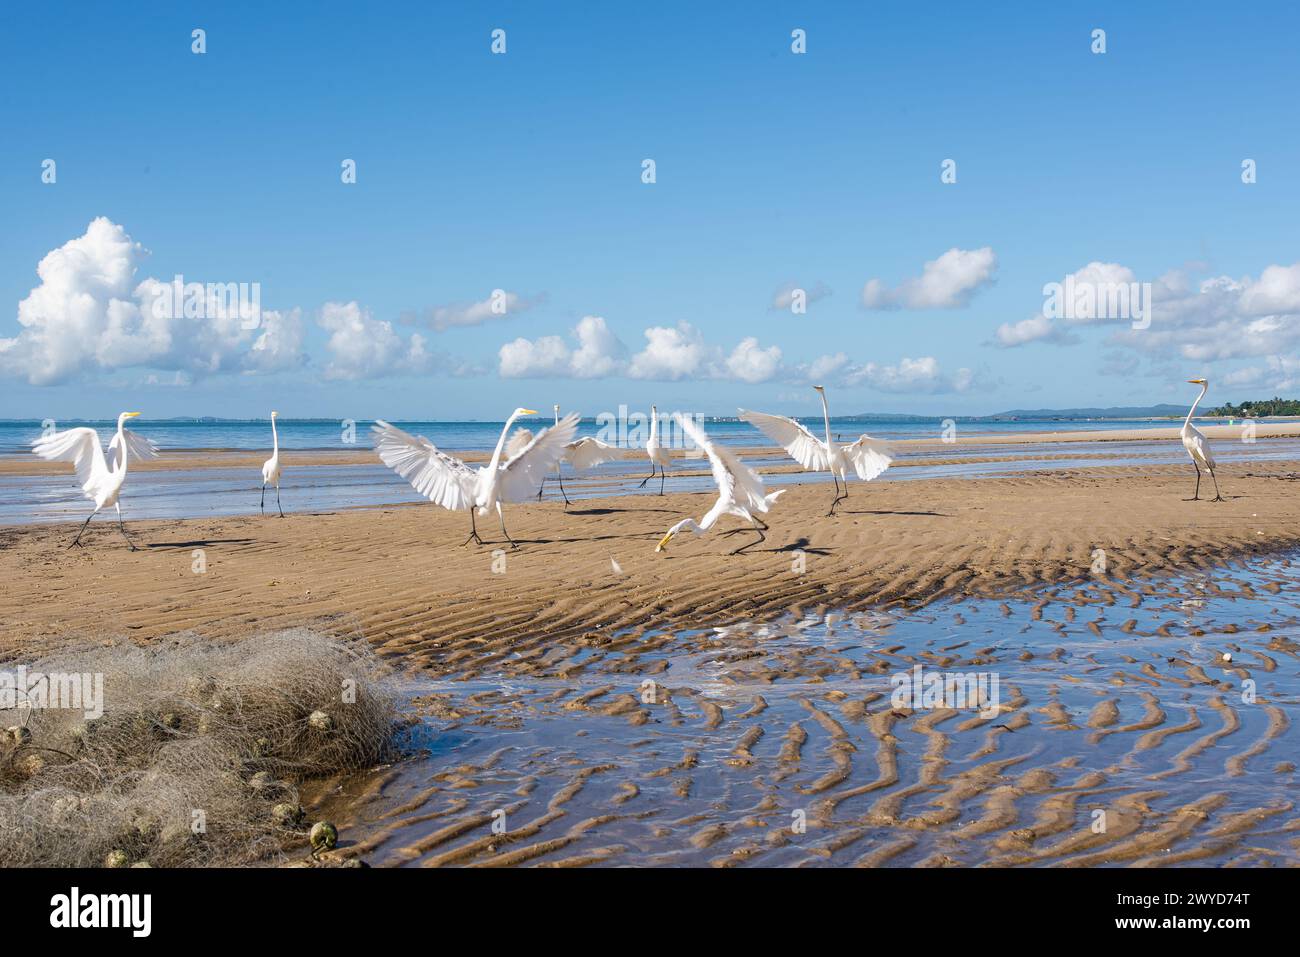 Garzas blancas en el borde de una playa. Pájaro marino en busca de comida. Animales salvajes. Foto de stock